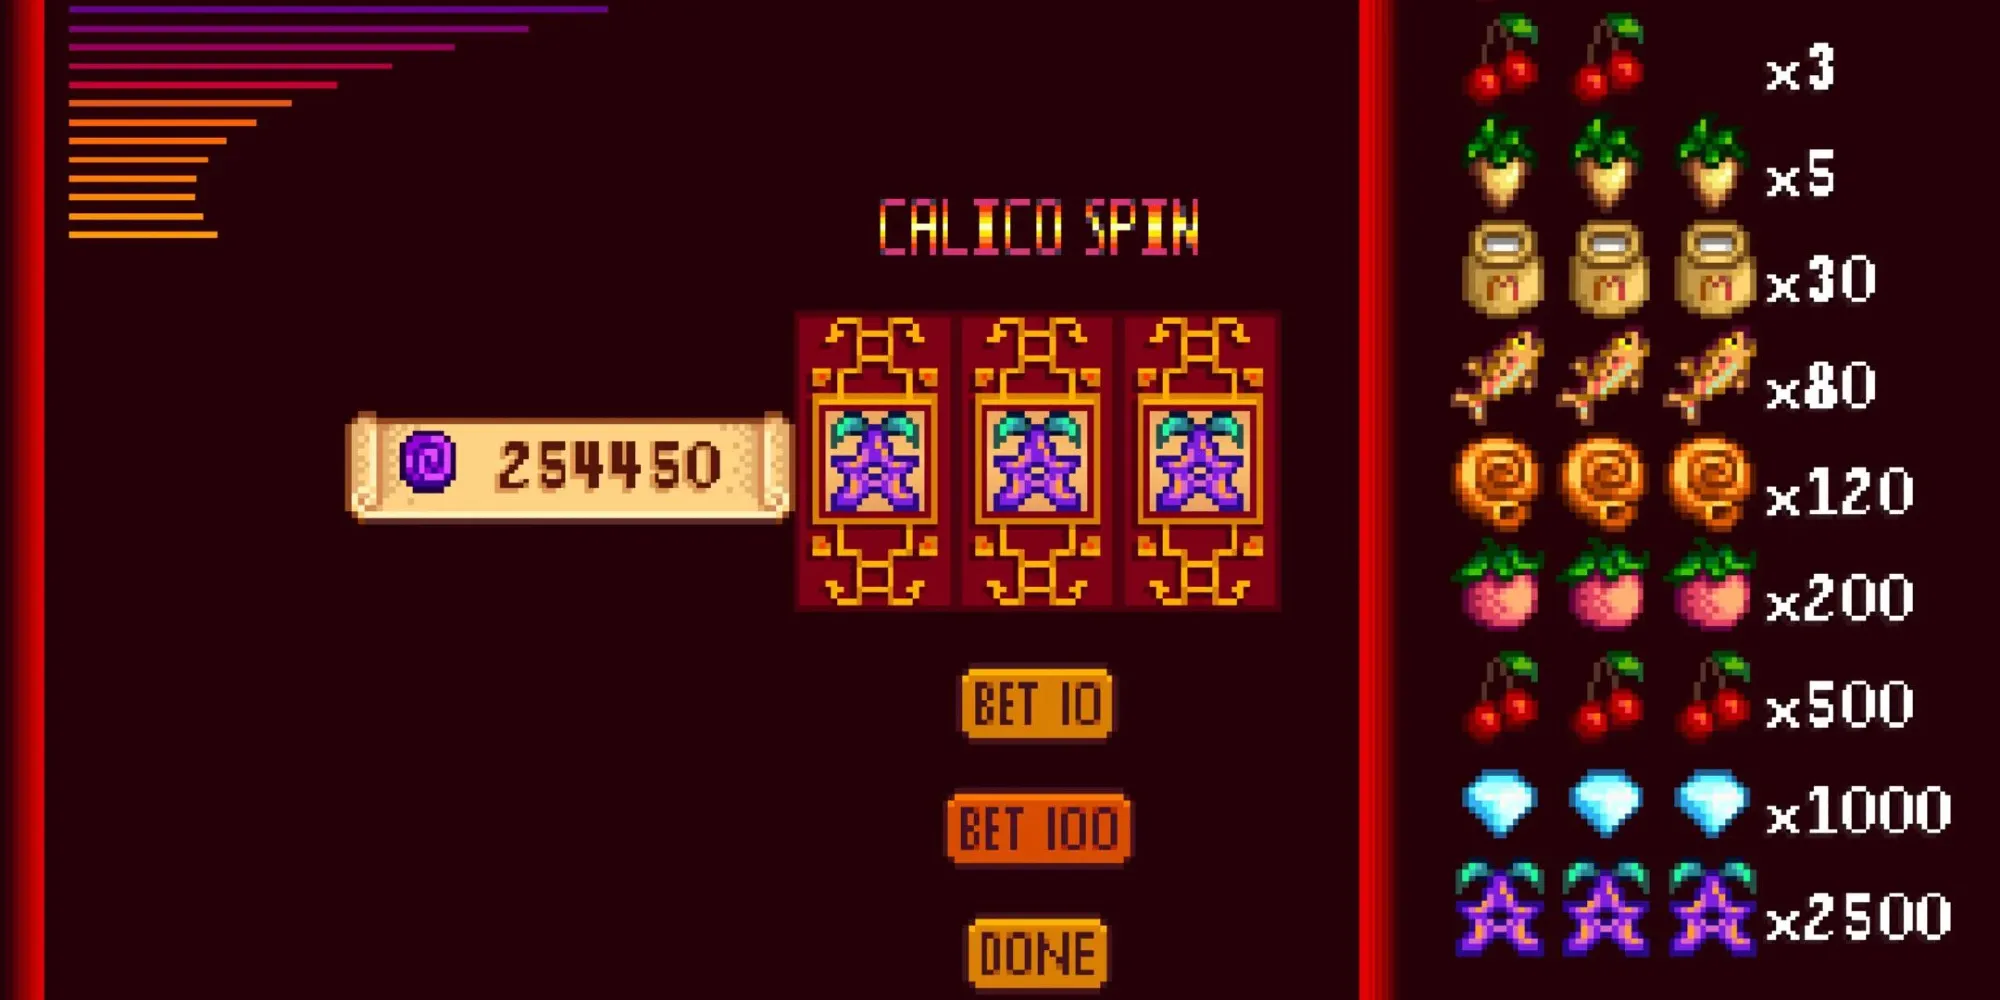 giocatore che atterra su tre stardrops nella slot machine